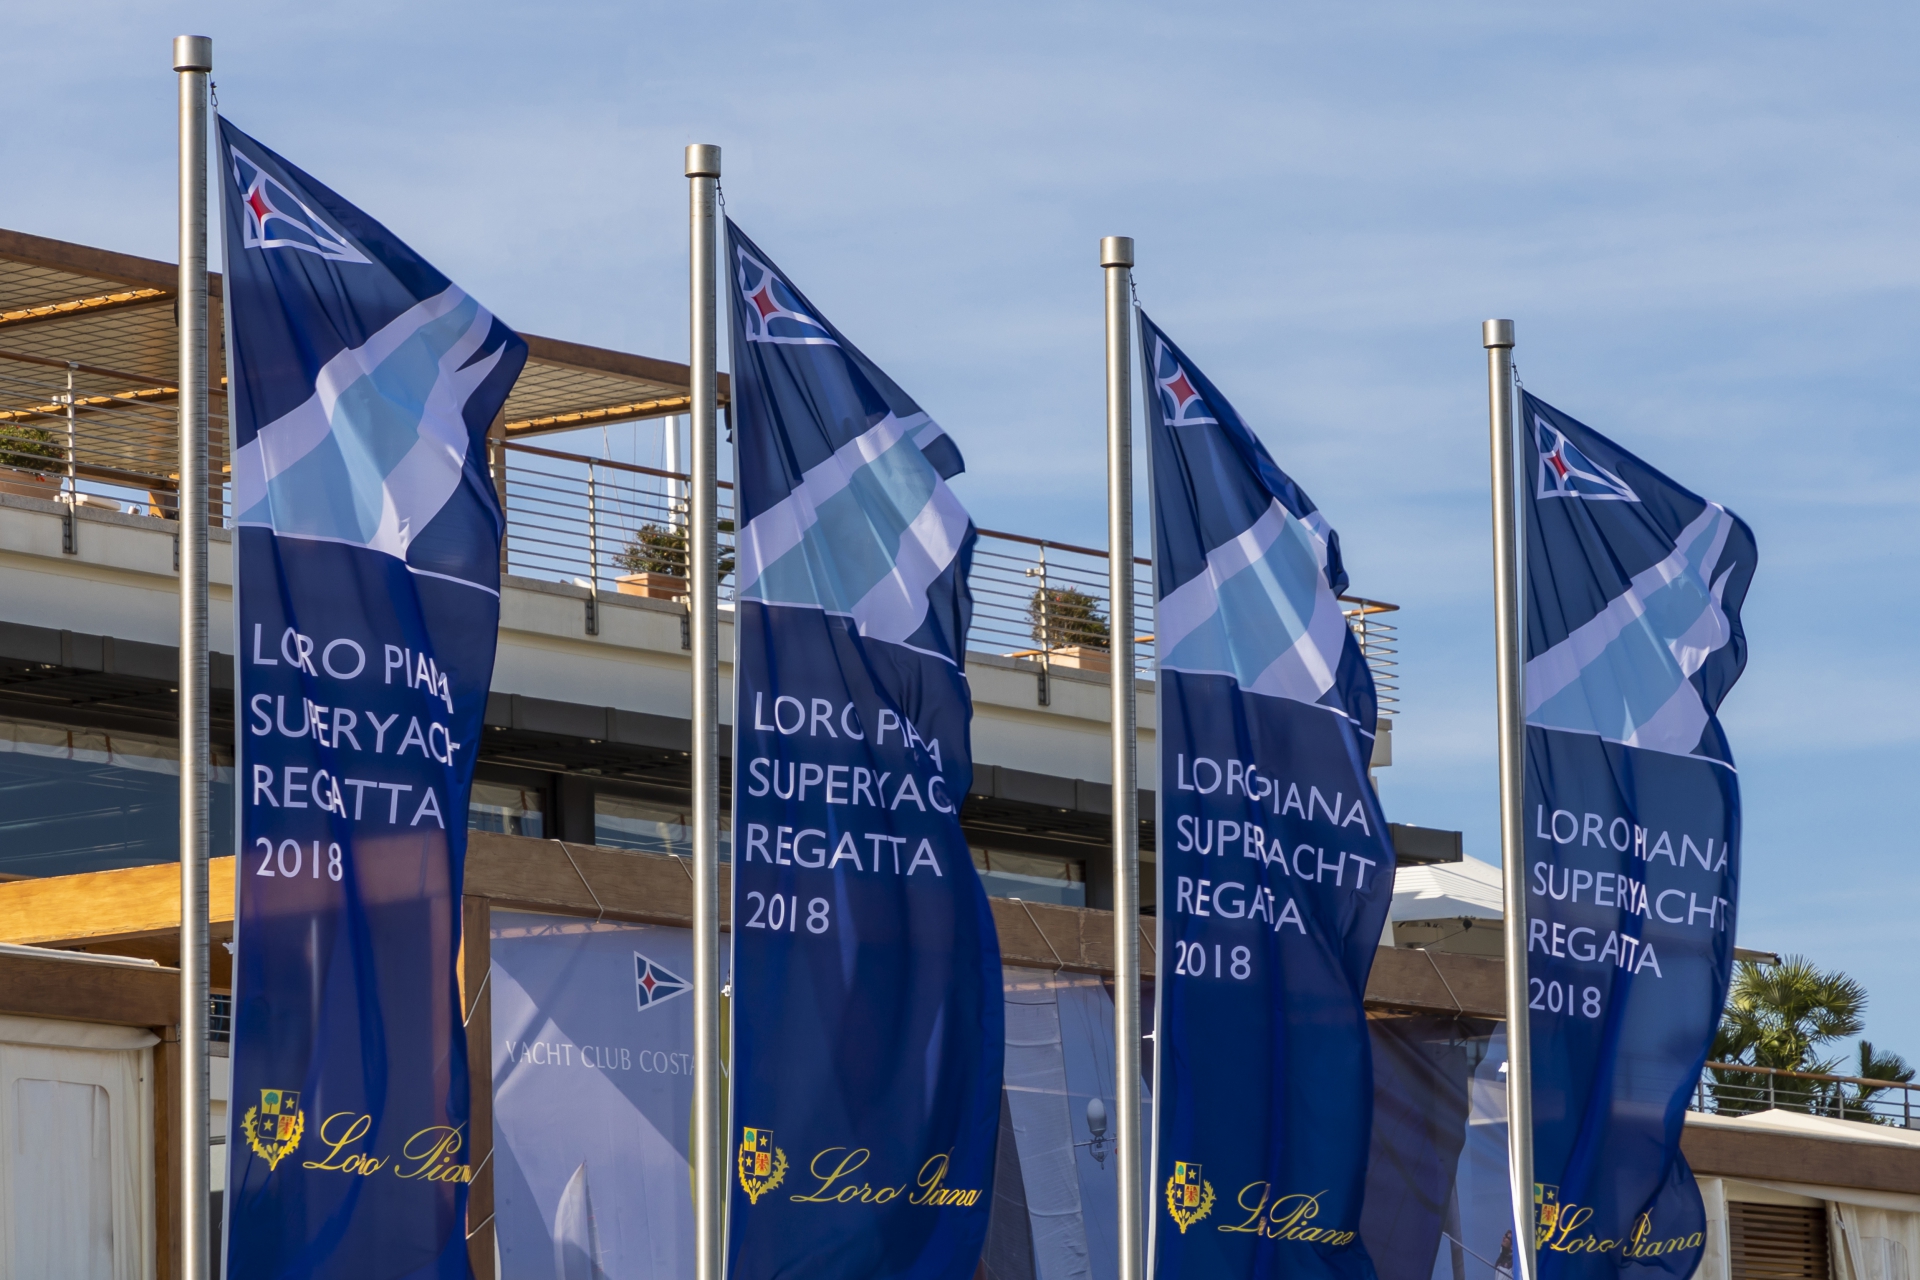 AP Over Alpha, no racing today at Loro Piana Superyacht Regatta - Press Release - Yacht Club Costa Smeralda